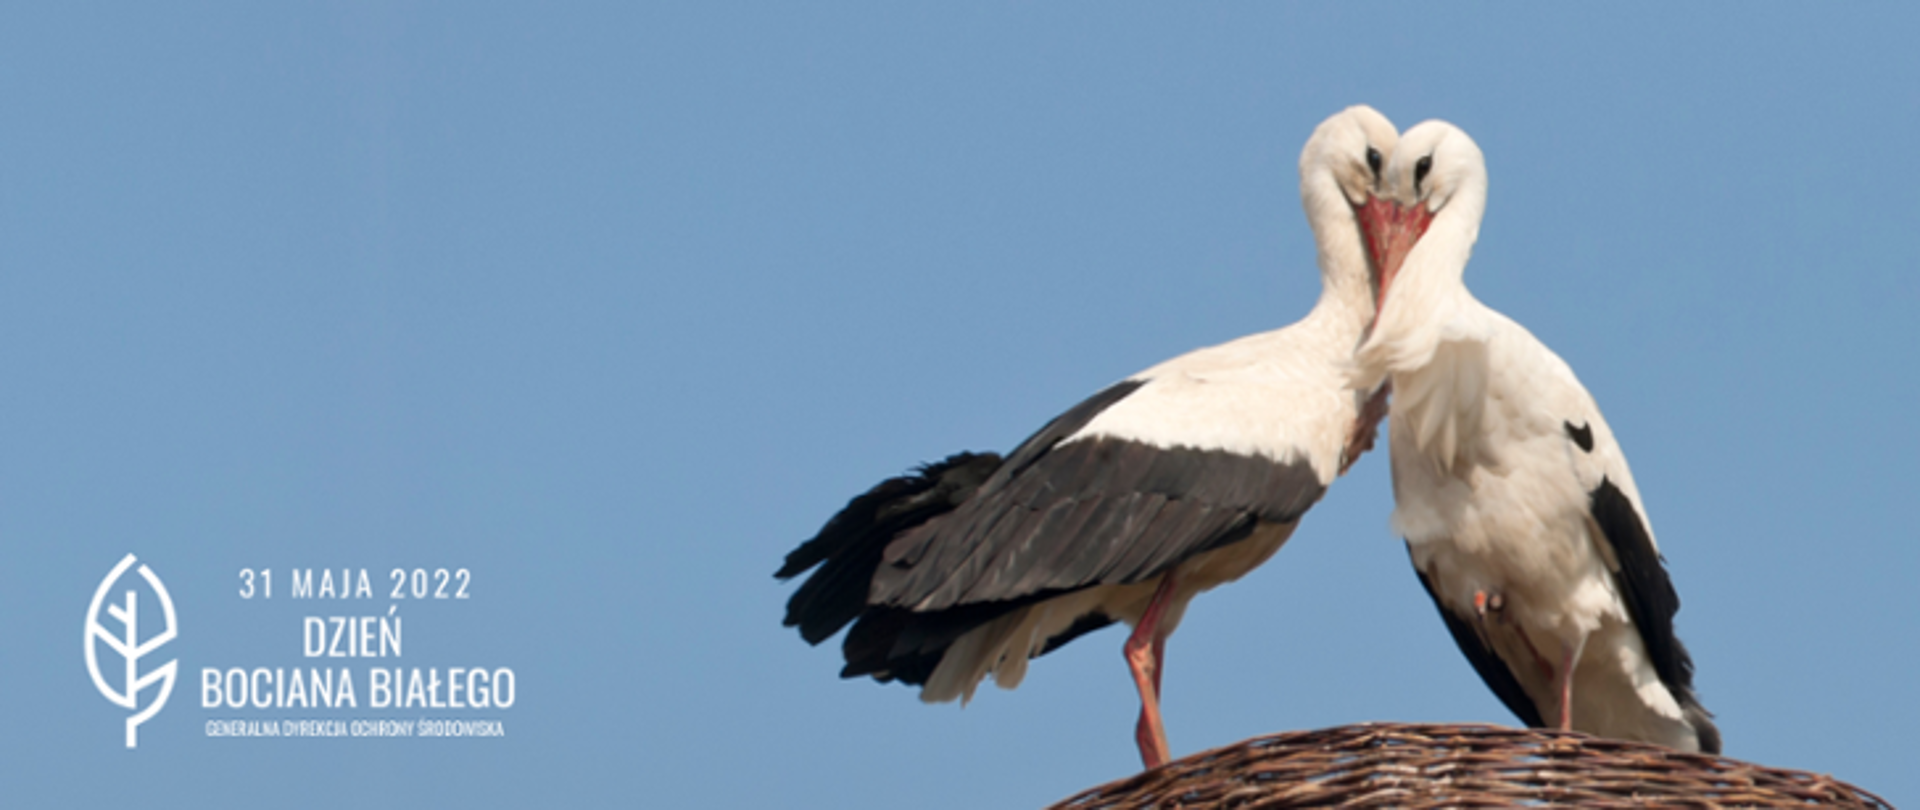 Dwa ptaki - bociany białe (o białych i czarnych piórach, czerwonych nogach i dziobach) stoją na gnieździe w kolorze brązowym. W tle błękitne niebo. W prawym dolnym rogu biały napis: 31 maja 2002 Dzień Bociana Białego (biały liść) i logo Generalnej Dyrekcji Ochrony Środowiska.